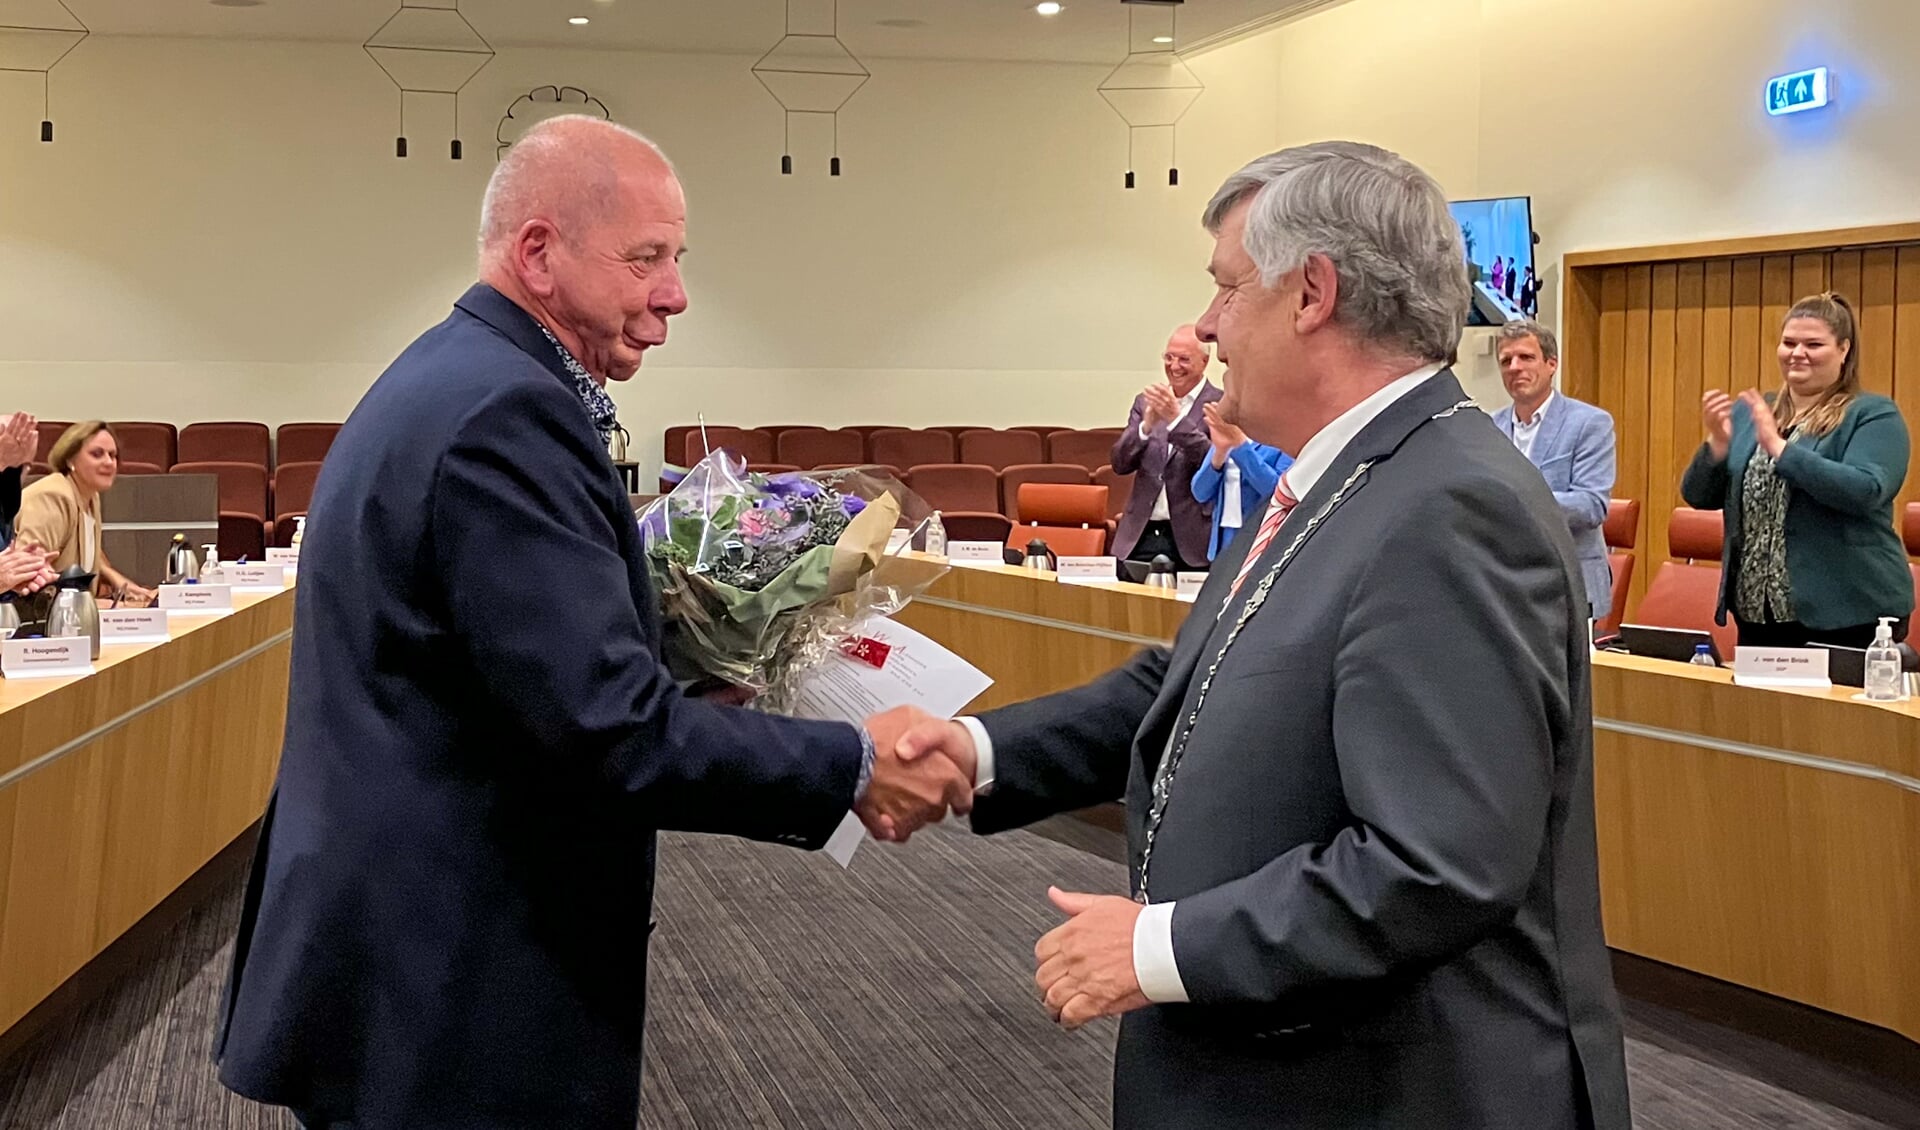 De heer Hoogendijk feliciteert burgemeester Lambooij.